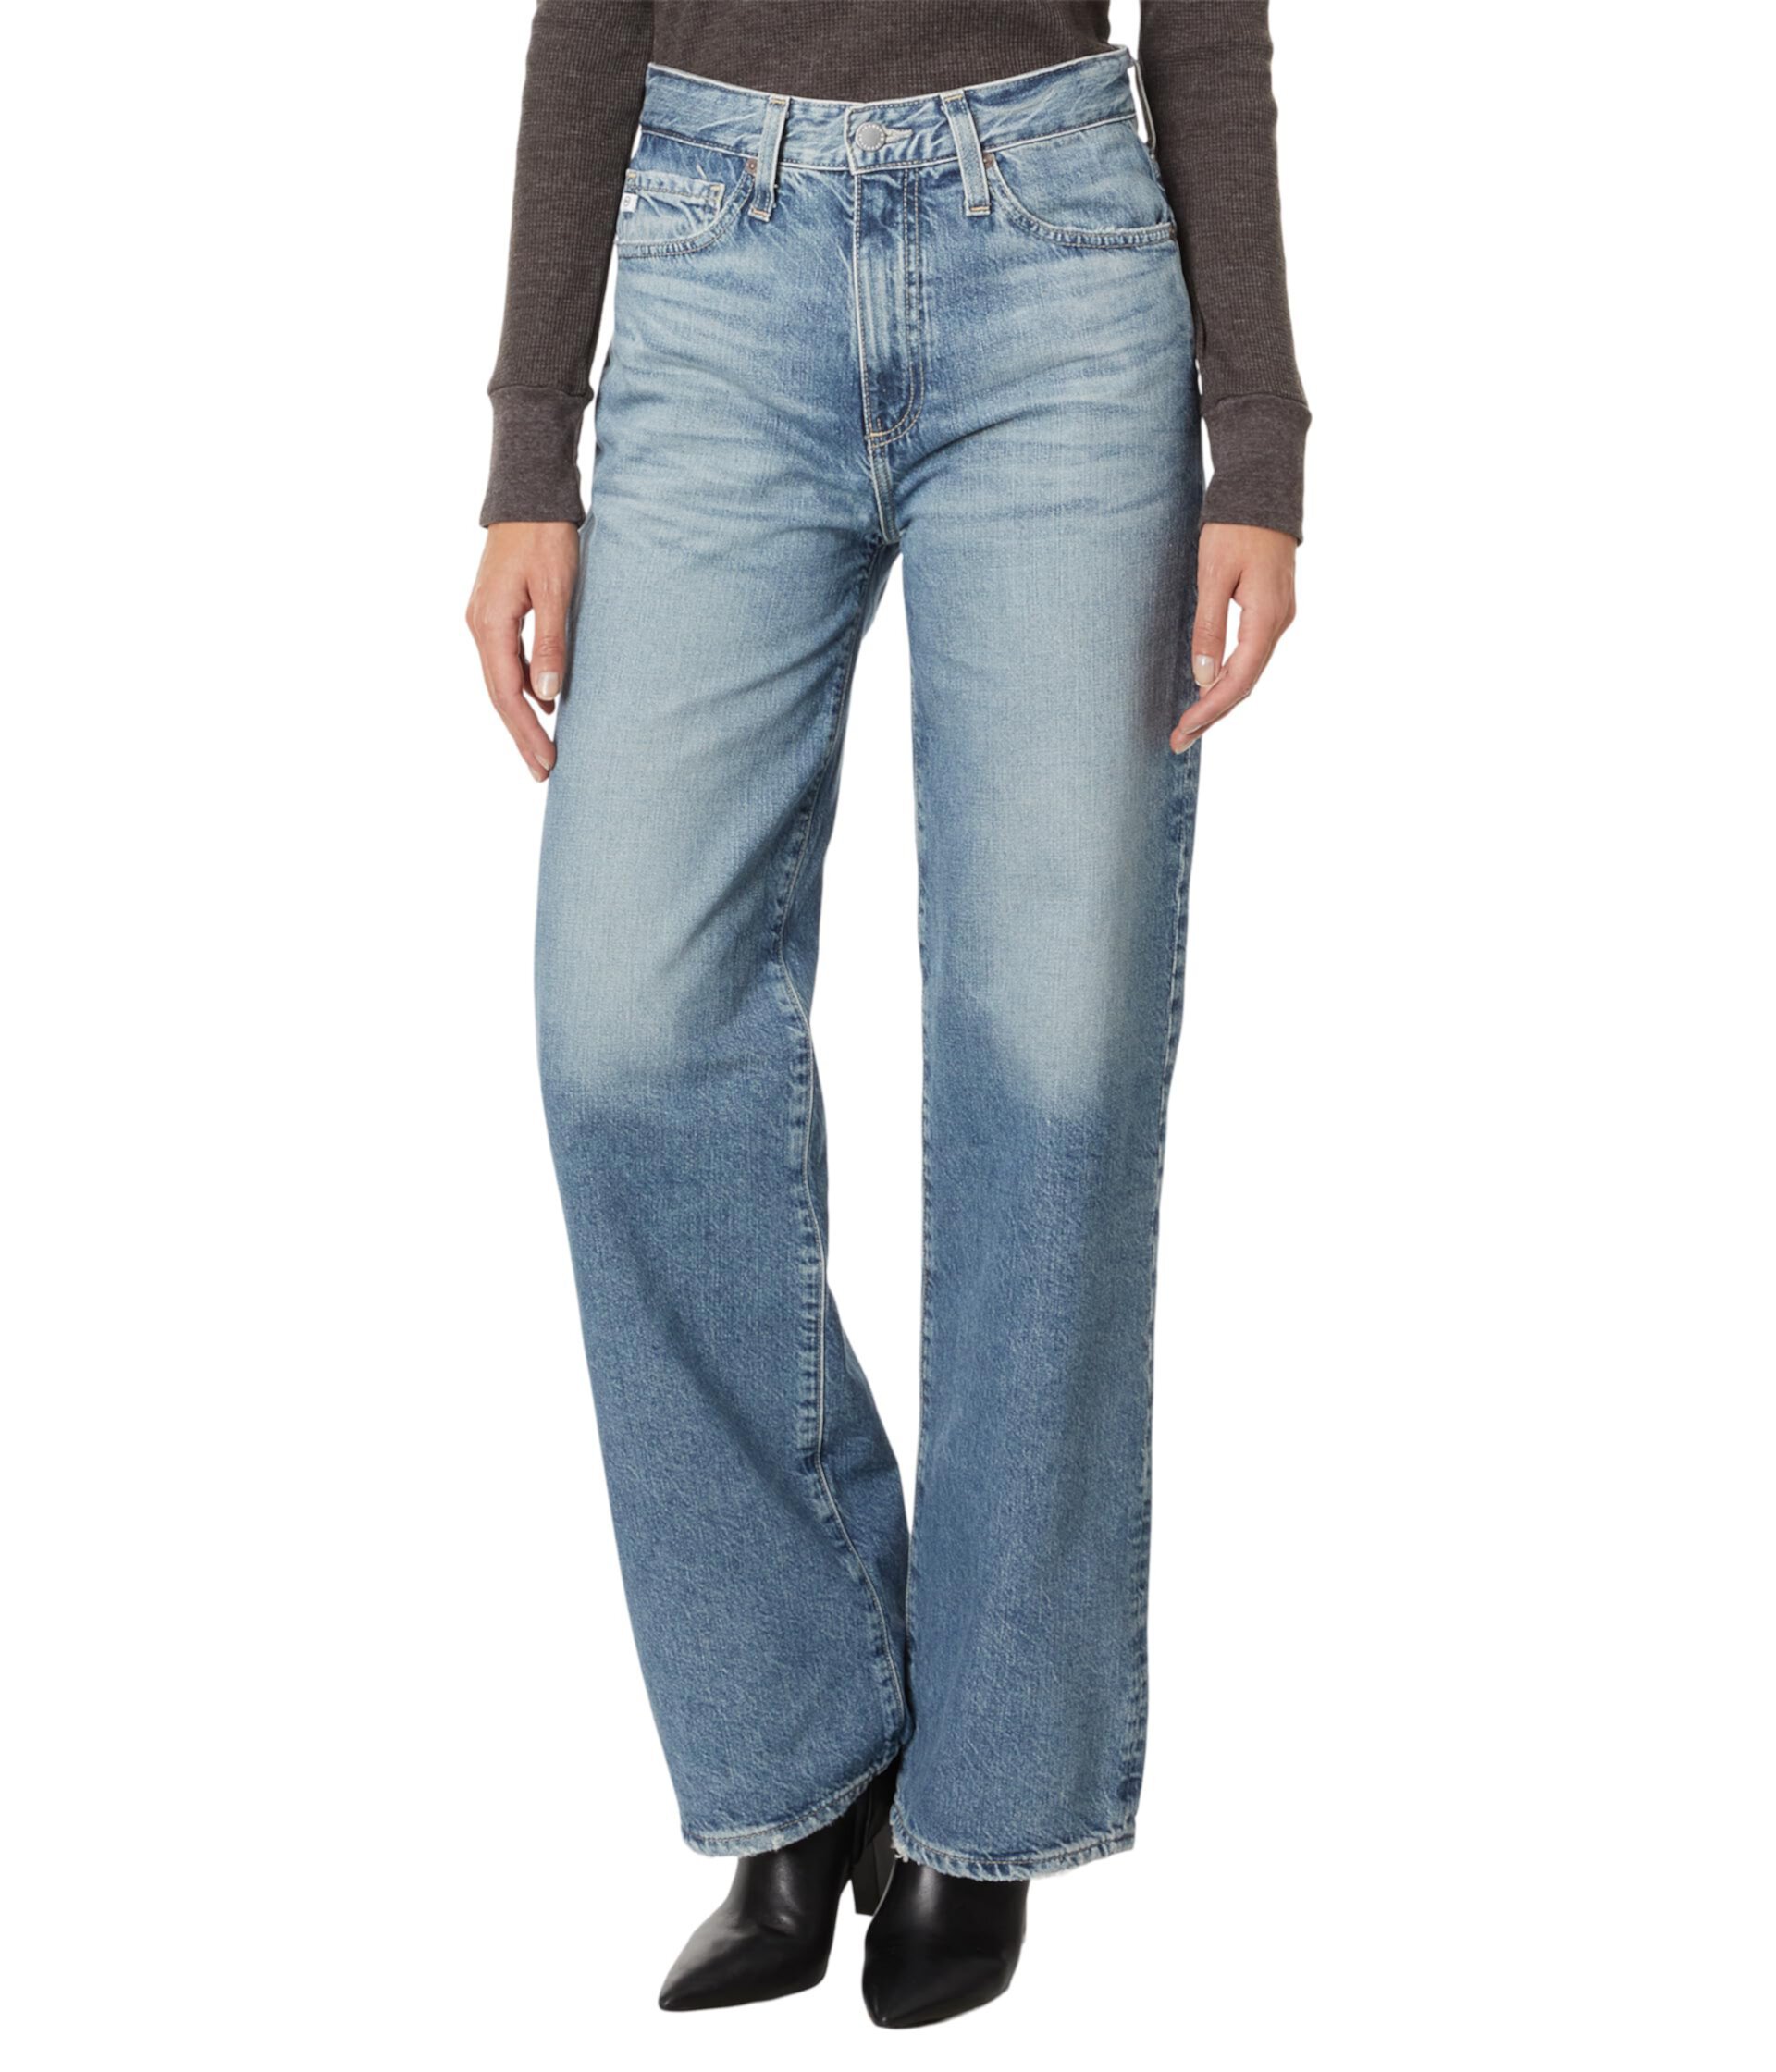 Широкие штанины с высокой посадкой Kora в цвете Rival AG Jeans